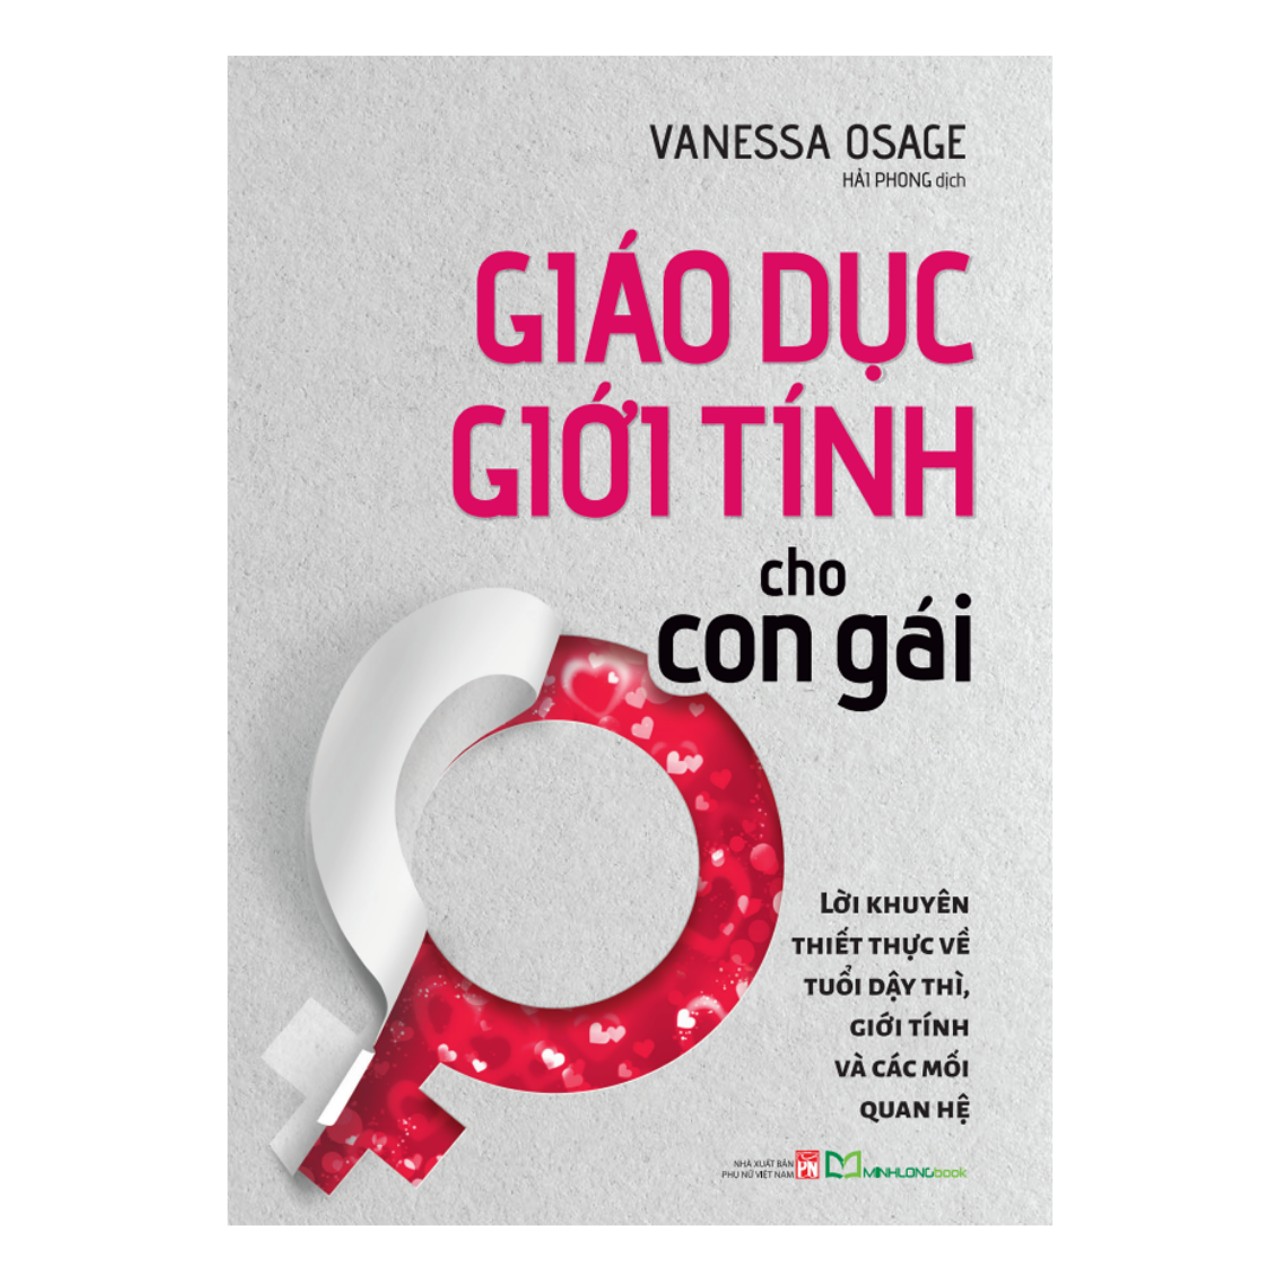 GIÁO DỤC GIỚI TÍNH CHO CON GÁI - Vanessa Osage – Hải Phong dịch  – NXB Phụ nữ – Minh Long Book